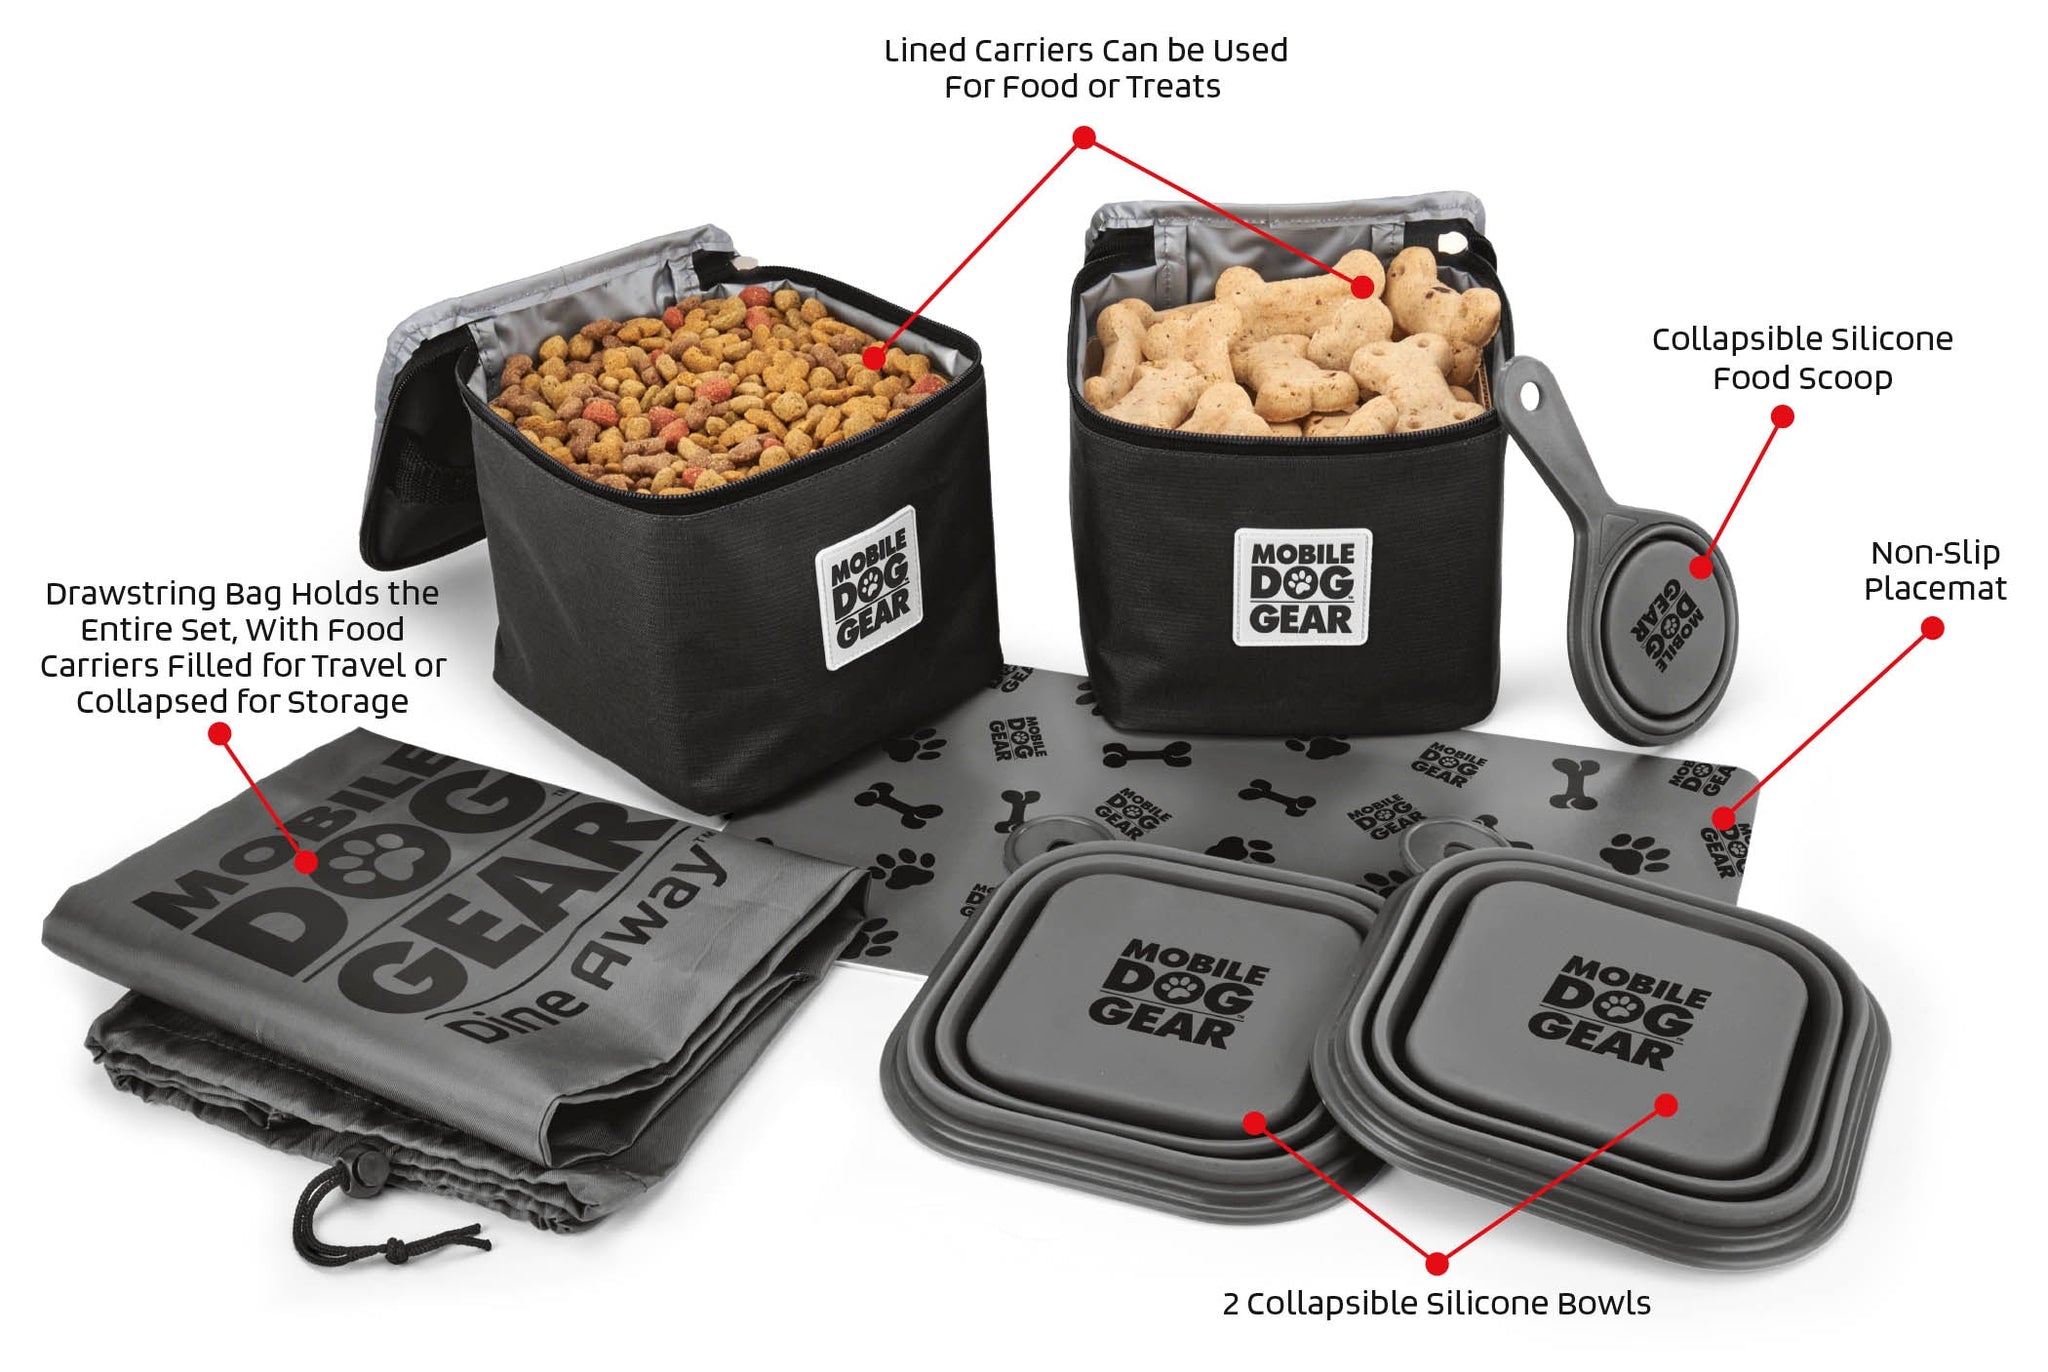 Parfait pour tous vos déplacements, ce système breveté pour la nourriture est conçu pour les gros chiens. L'ensemble comprend deux contenants de 15 tasses pour la nourriture et les gâteries, , deux bols en silicone pliables de 5 tasses( bols à chiens), une cuillière pour la nourriture et un napperon amovible.